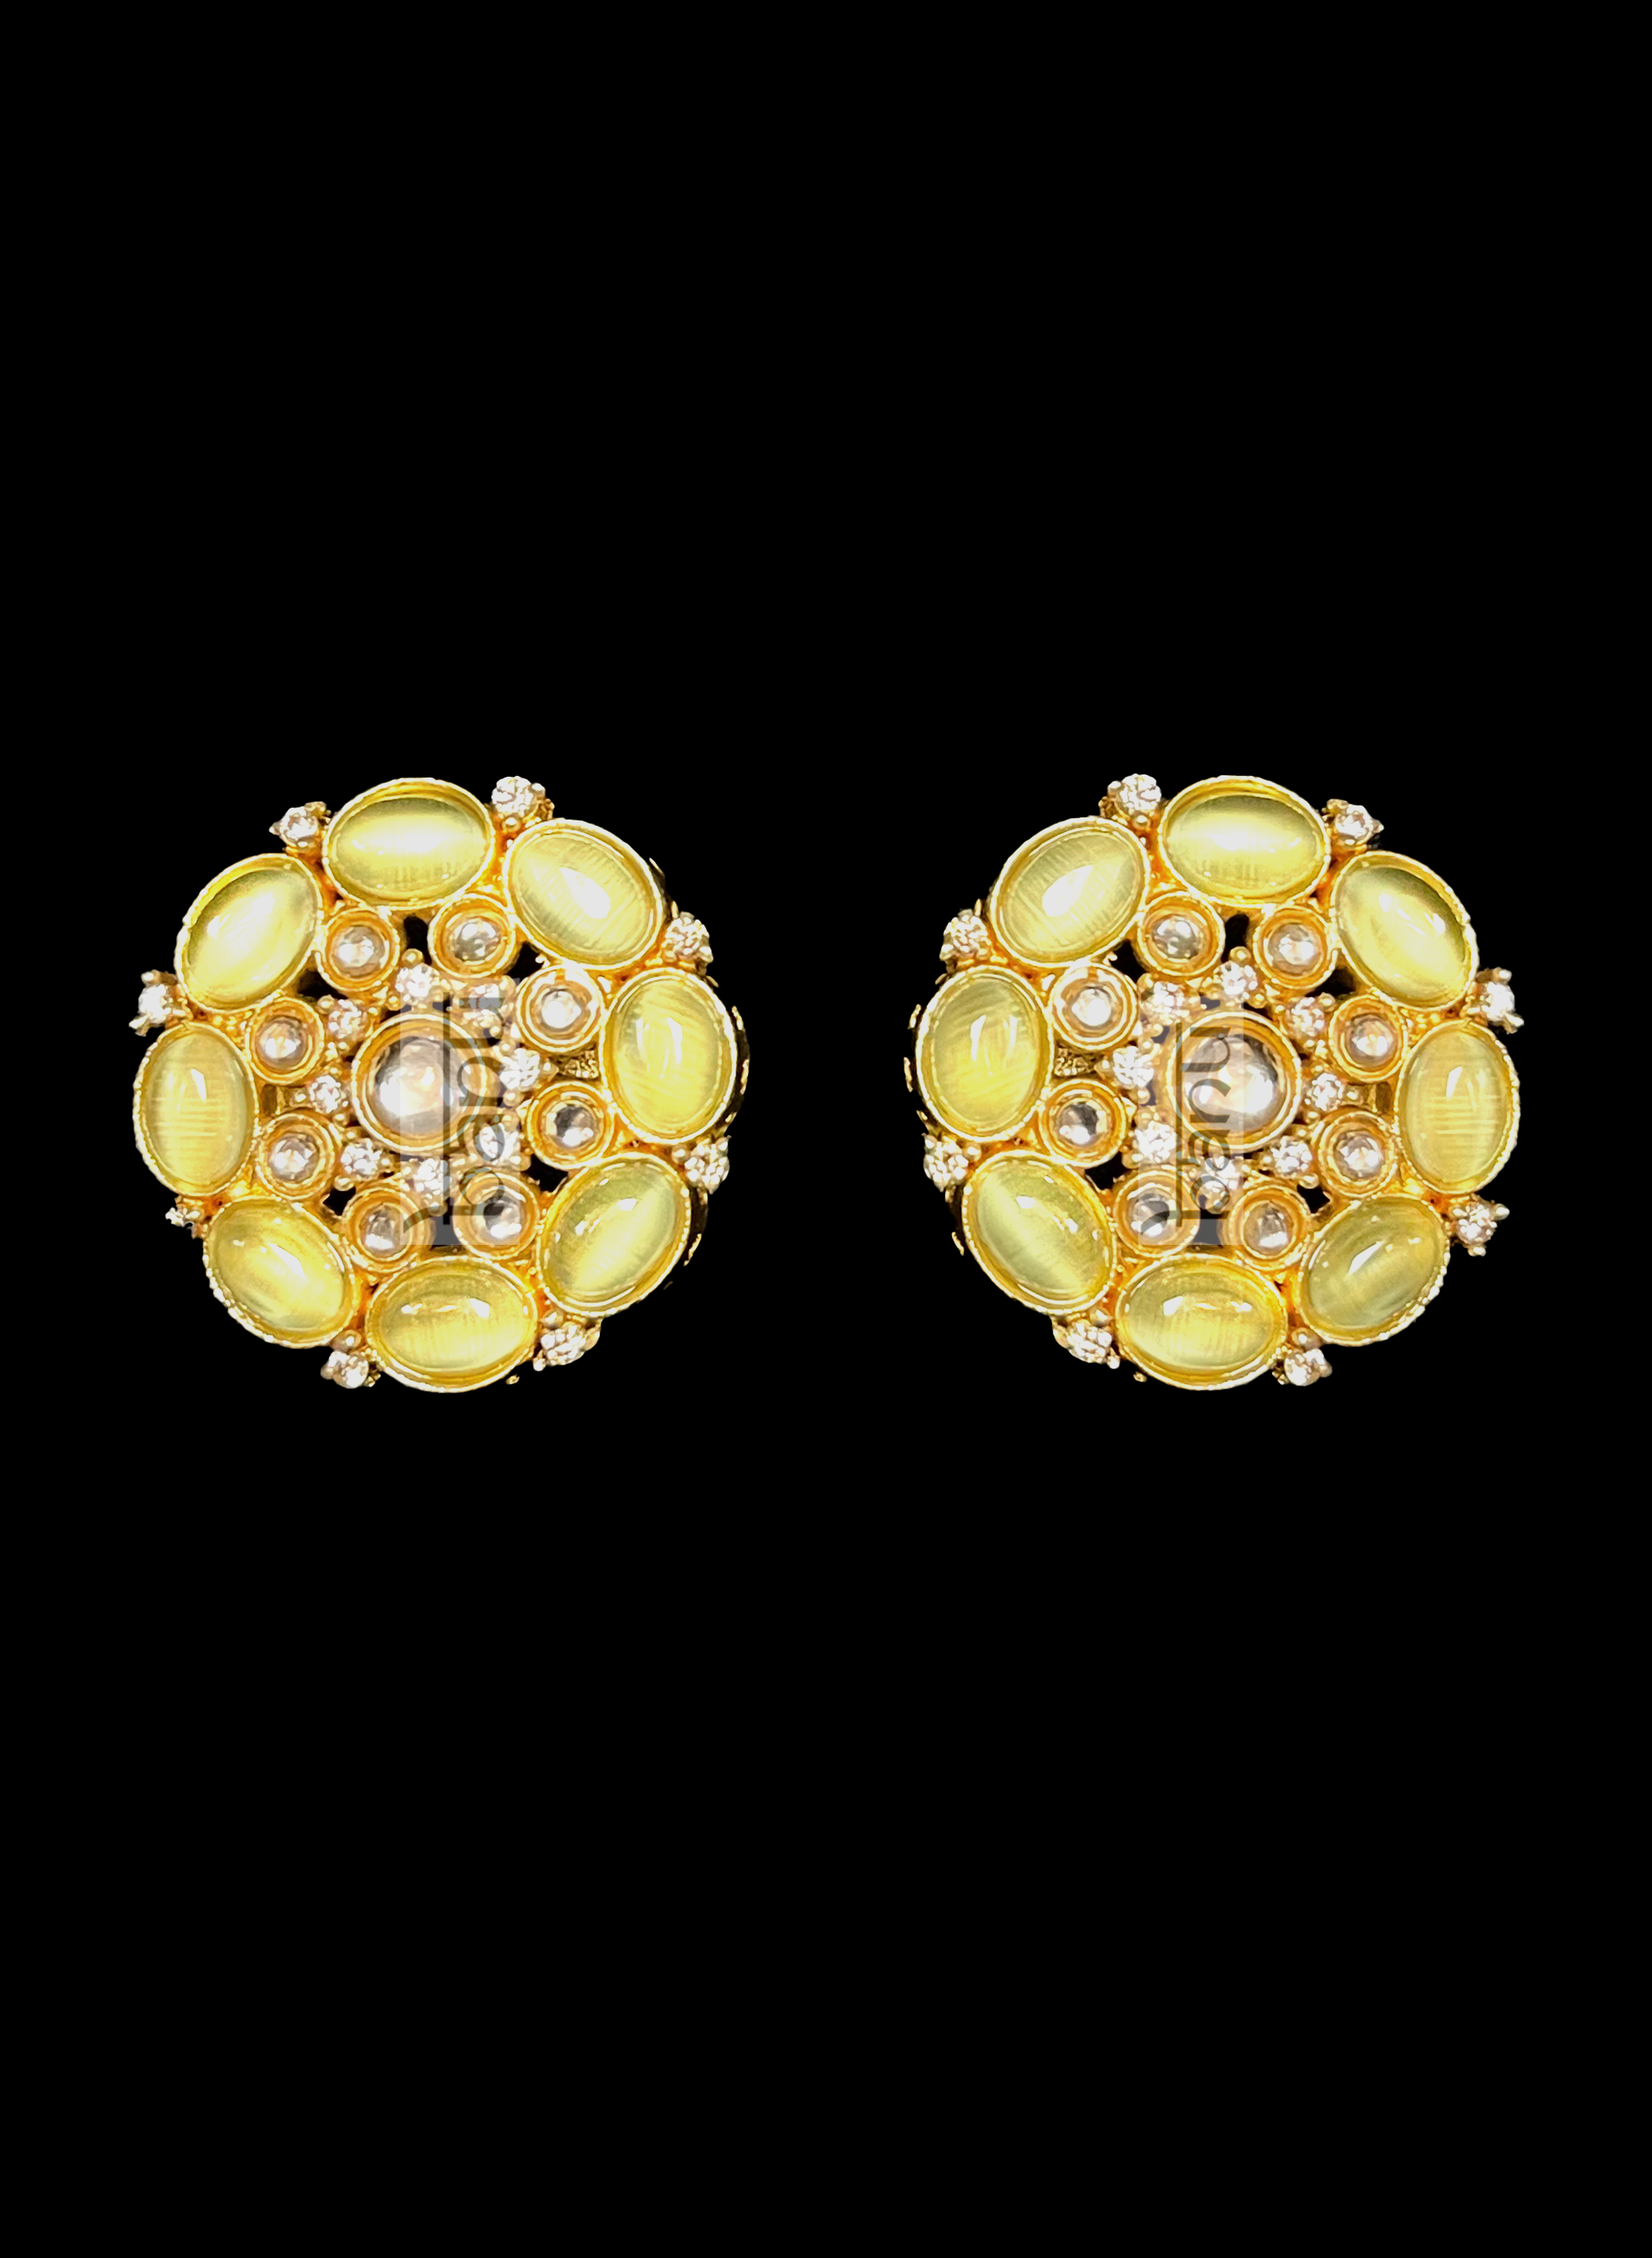 Lemon yellow onyx Indian stud earrings with CZ stones